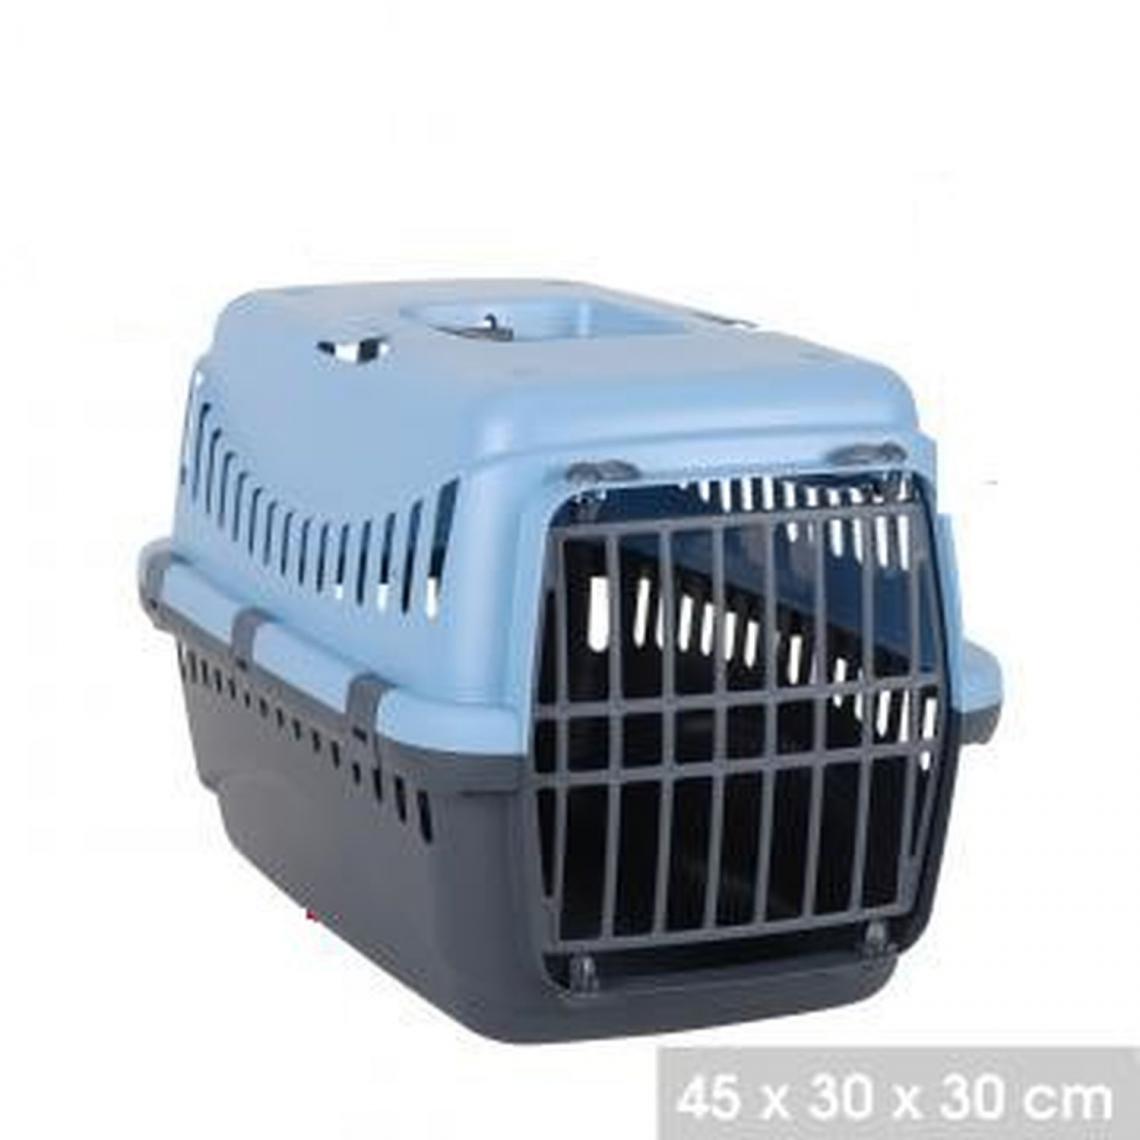 Toilinux - Cage de transport Gipsy pour Chien - Bleu et Gris anthracite - Equipement de transport pour chat